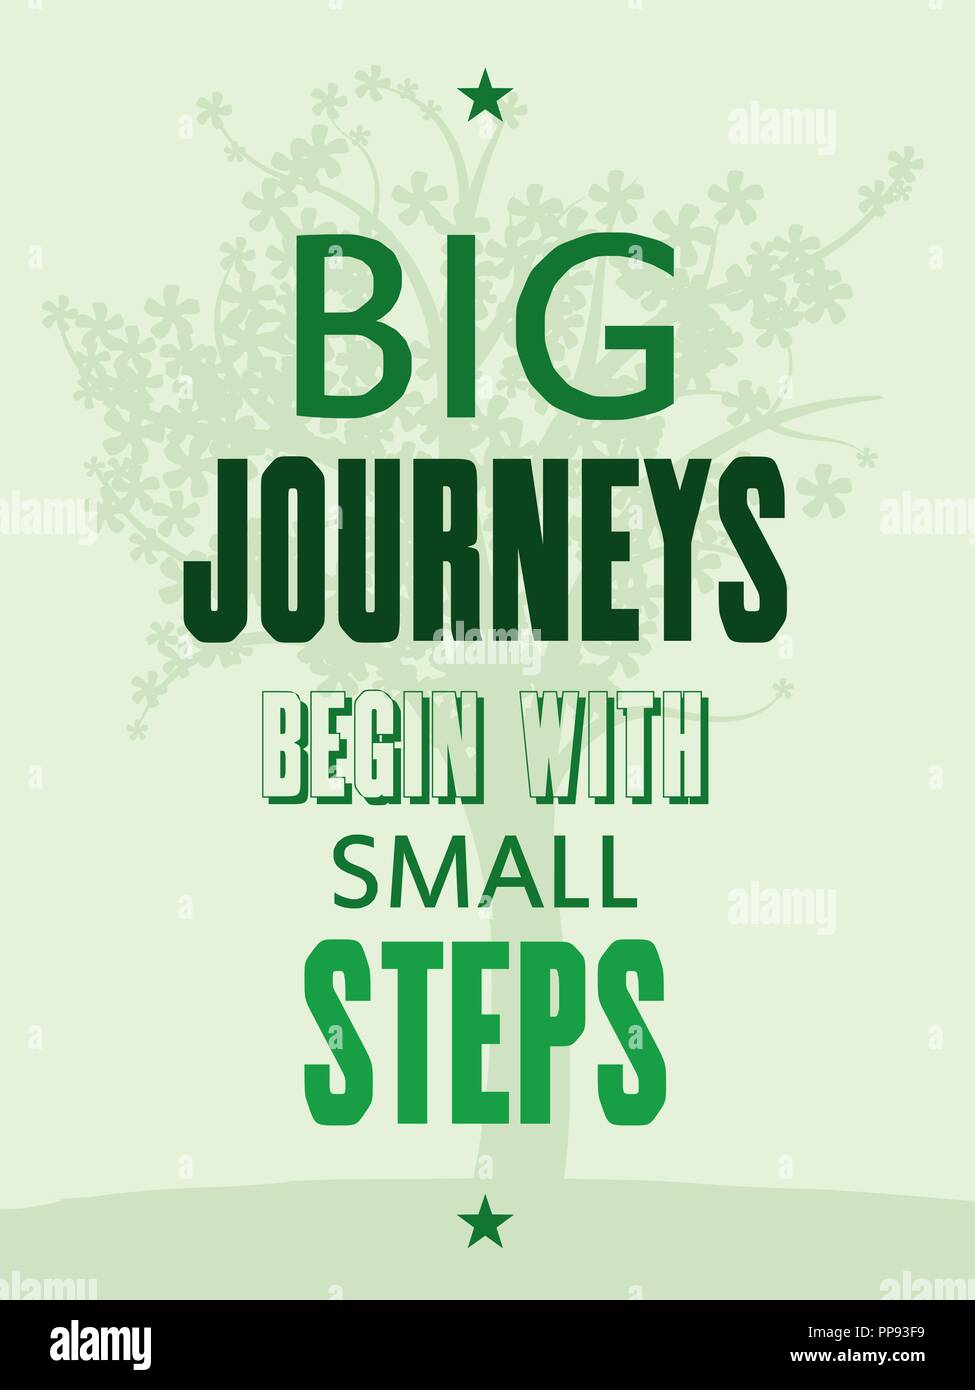 Große Reisen beginnen mit kleinen Schritten. Motivational poster Mit inspirierenden Zitat. Philosophie und Weisheit. Stock Vektor